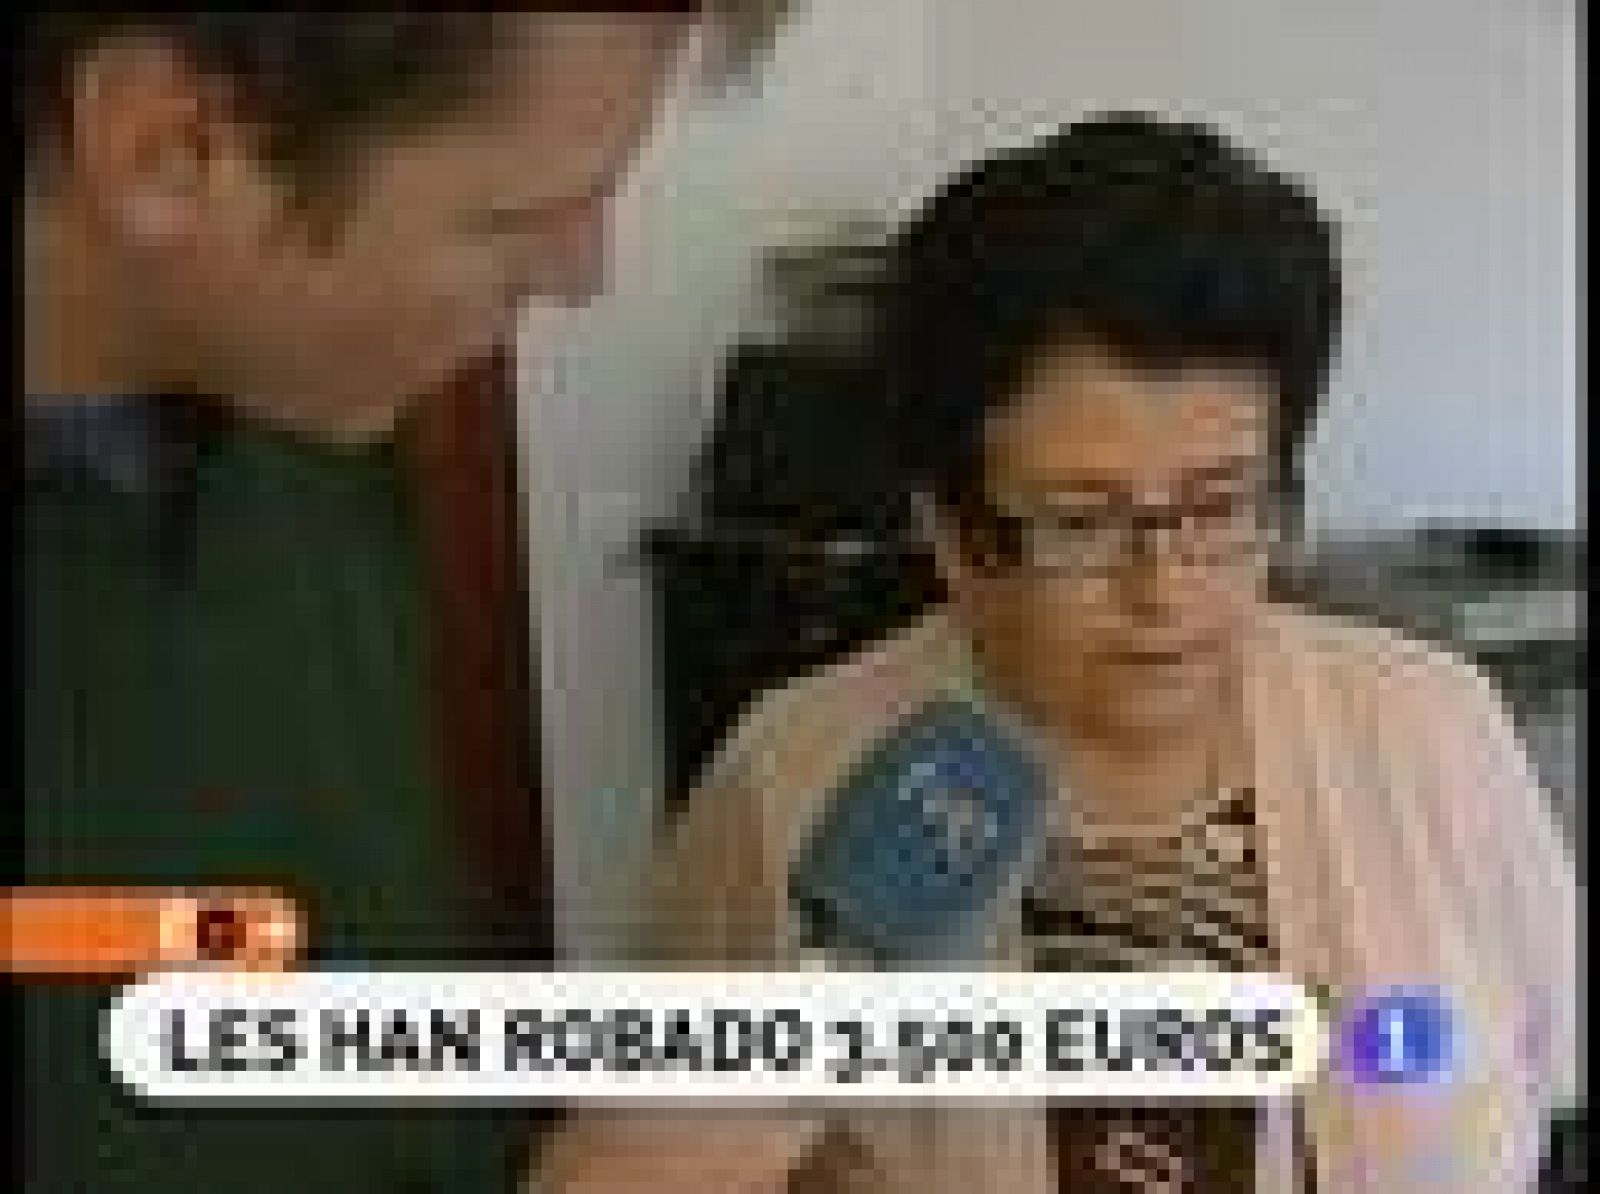 España Directo: Les han robado 3.500 euros | RTVE Play